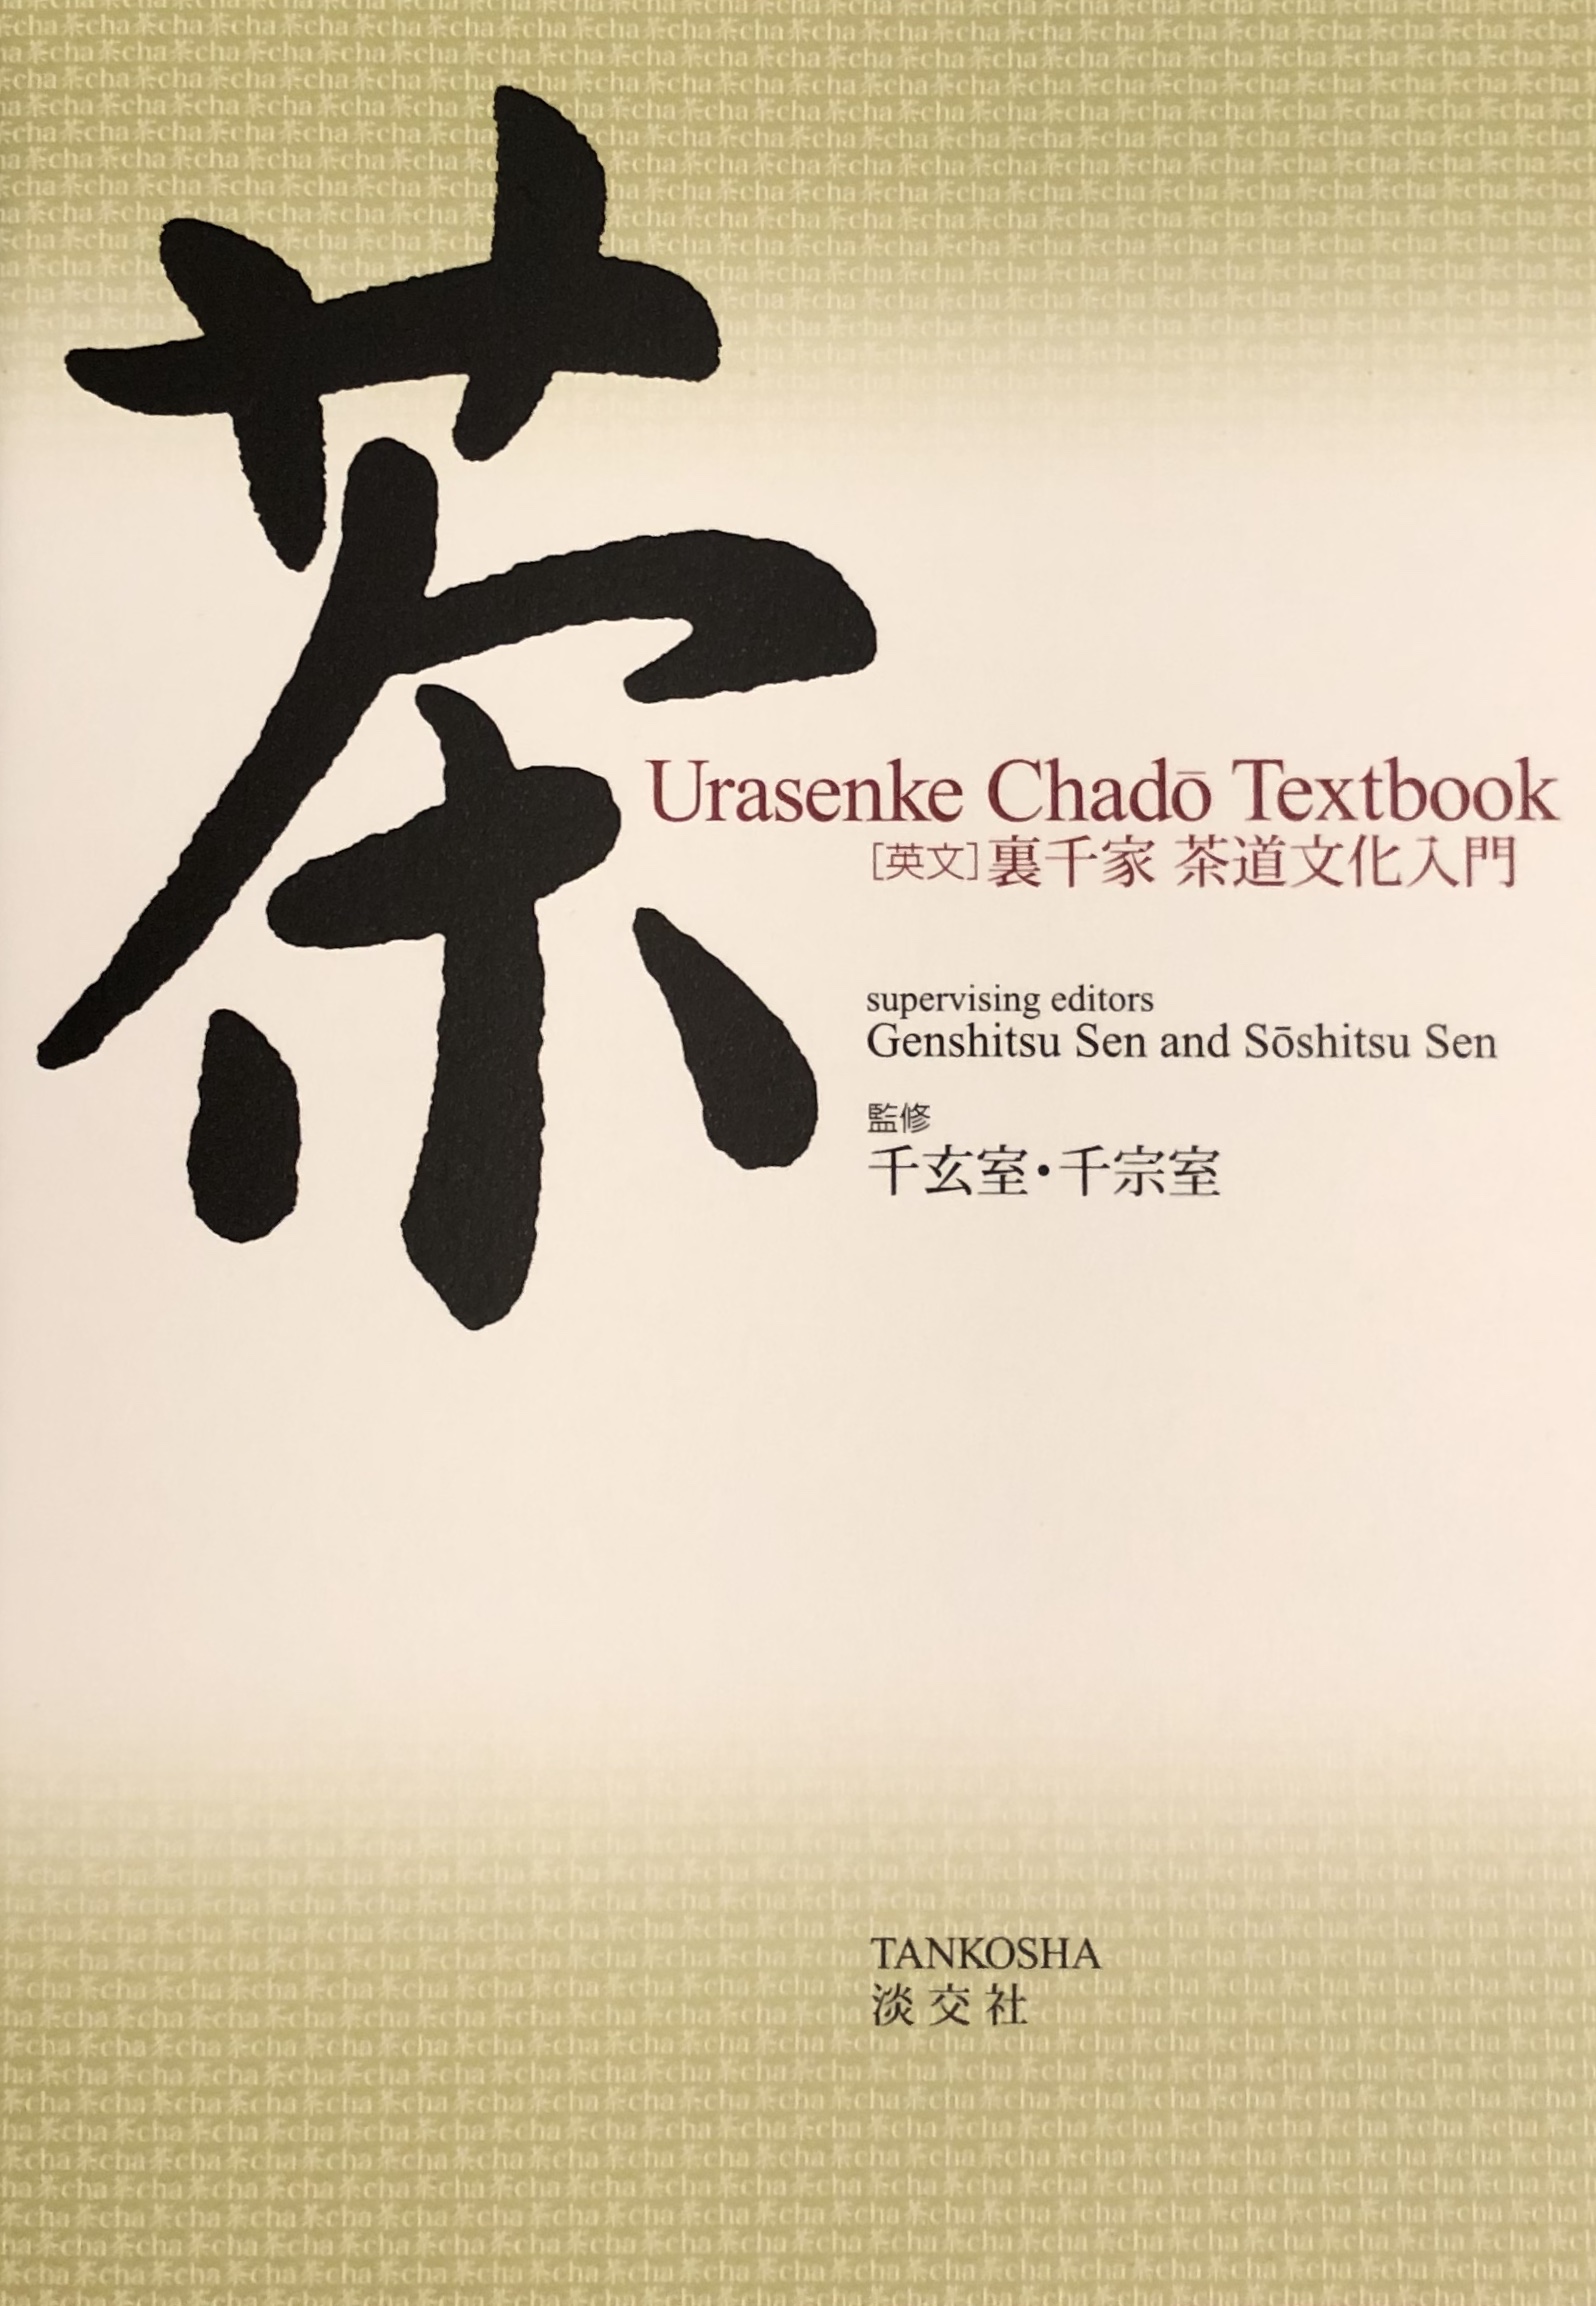 chadotextbook